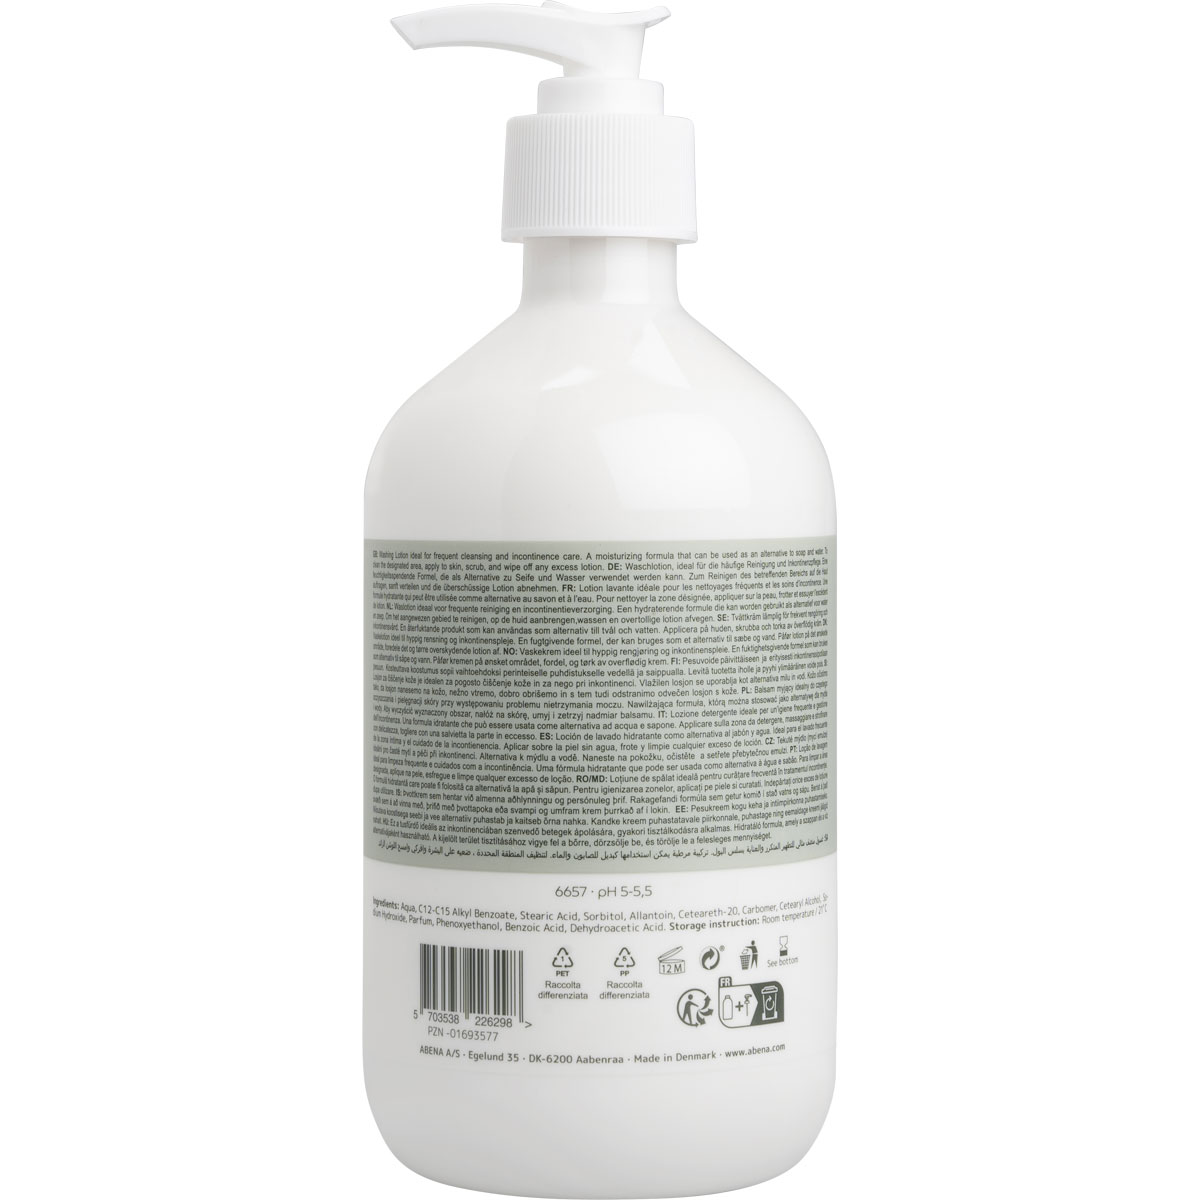 ABENA Skincare - Waschlotion, leicht parfümiert, 500 ml Spender